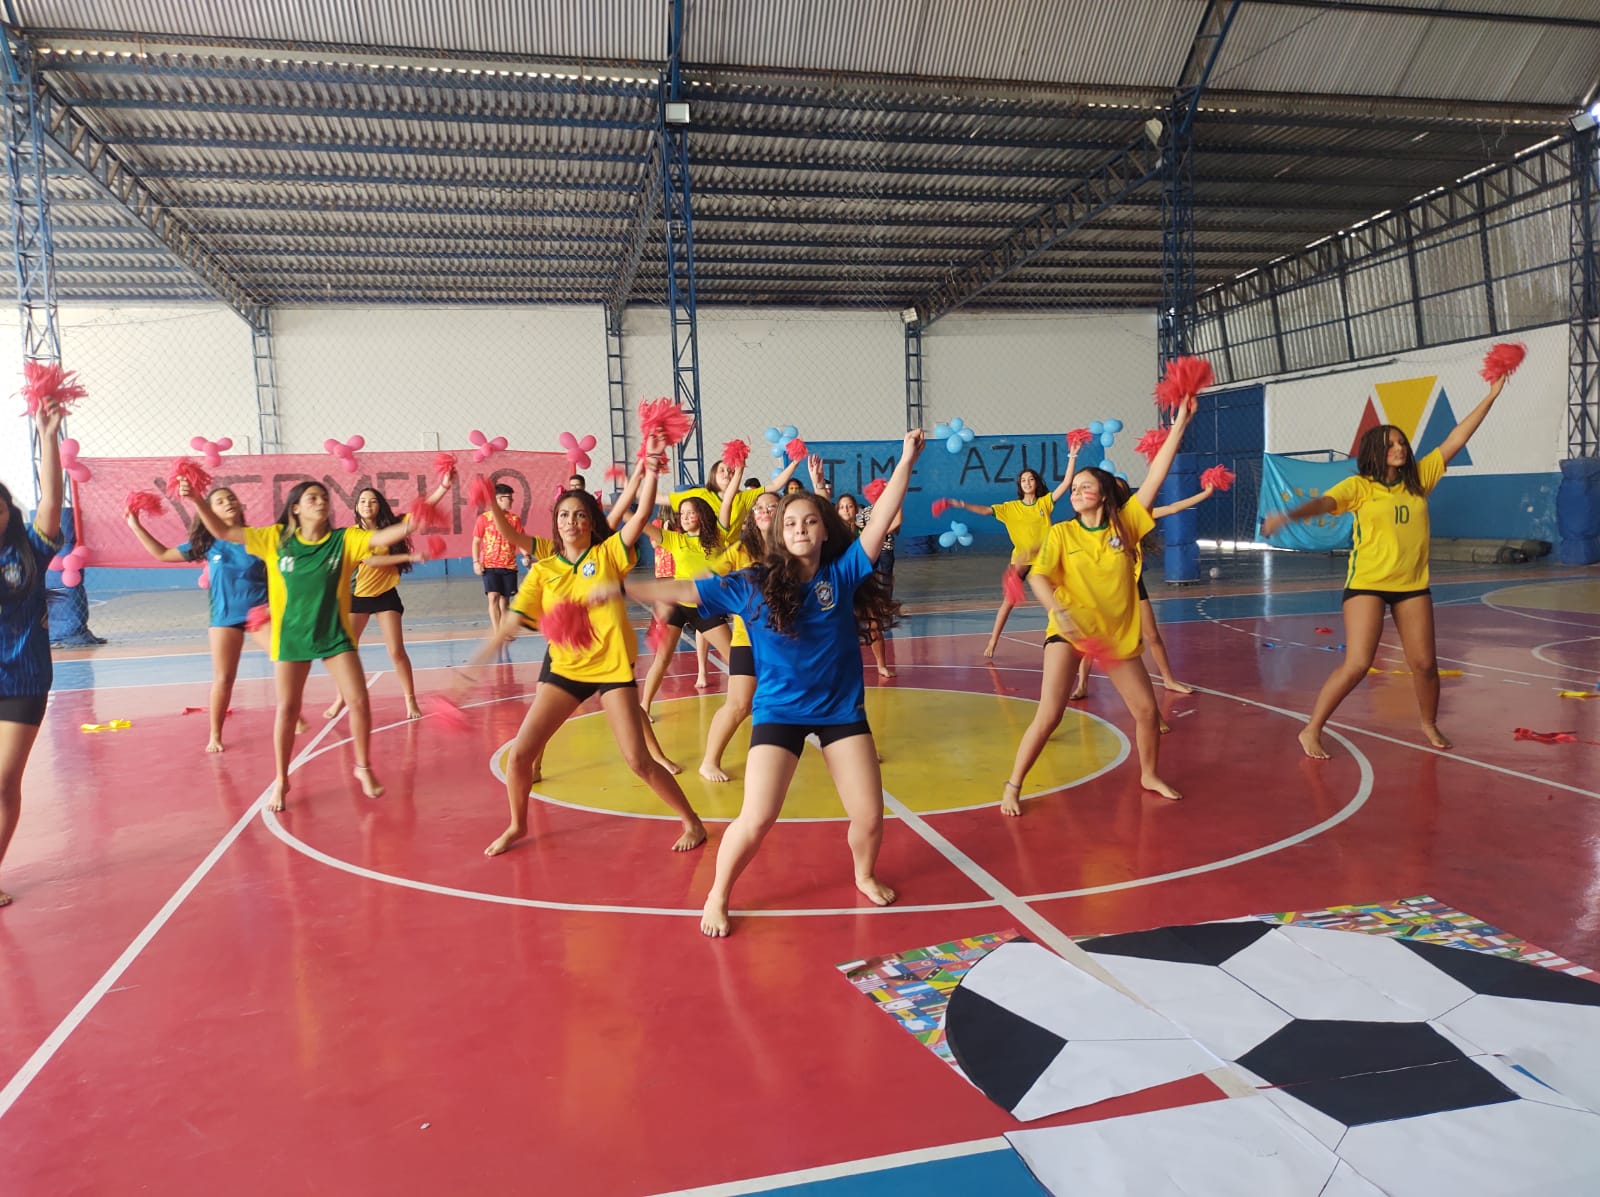 Na abertura das olimpíadas, Mananciais lança música do Colégio - Notícias -  Colégio do Bosque Mananciais